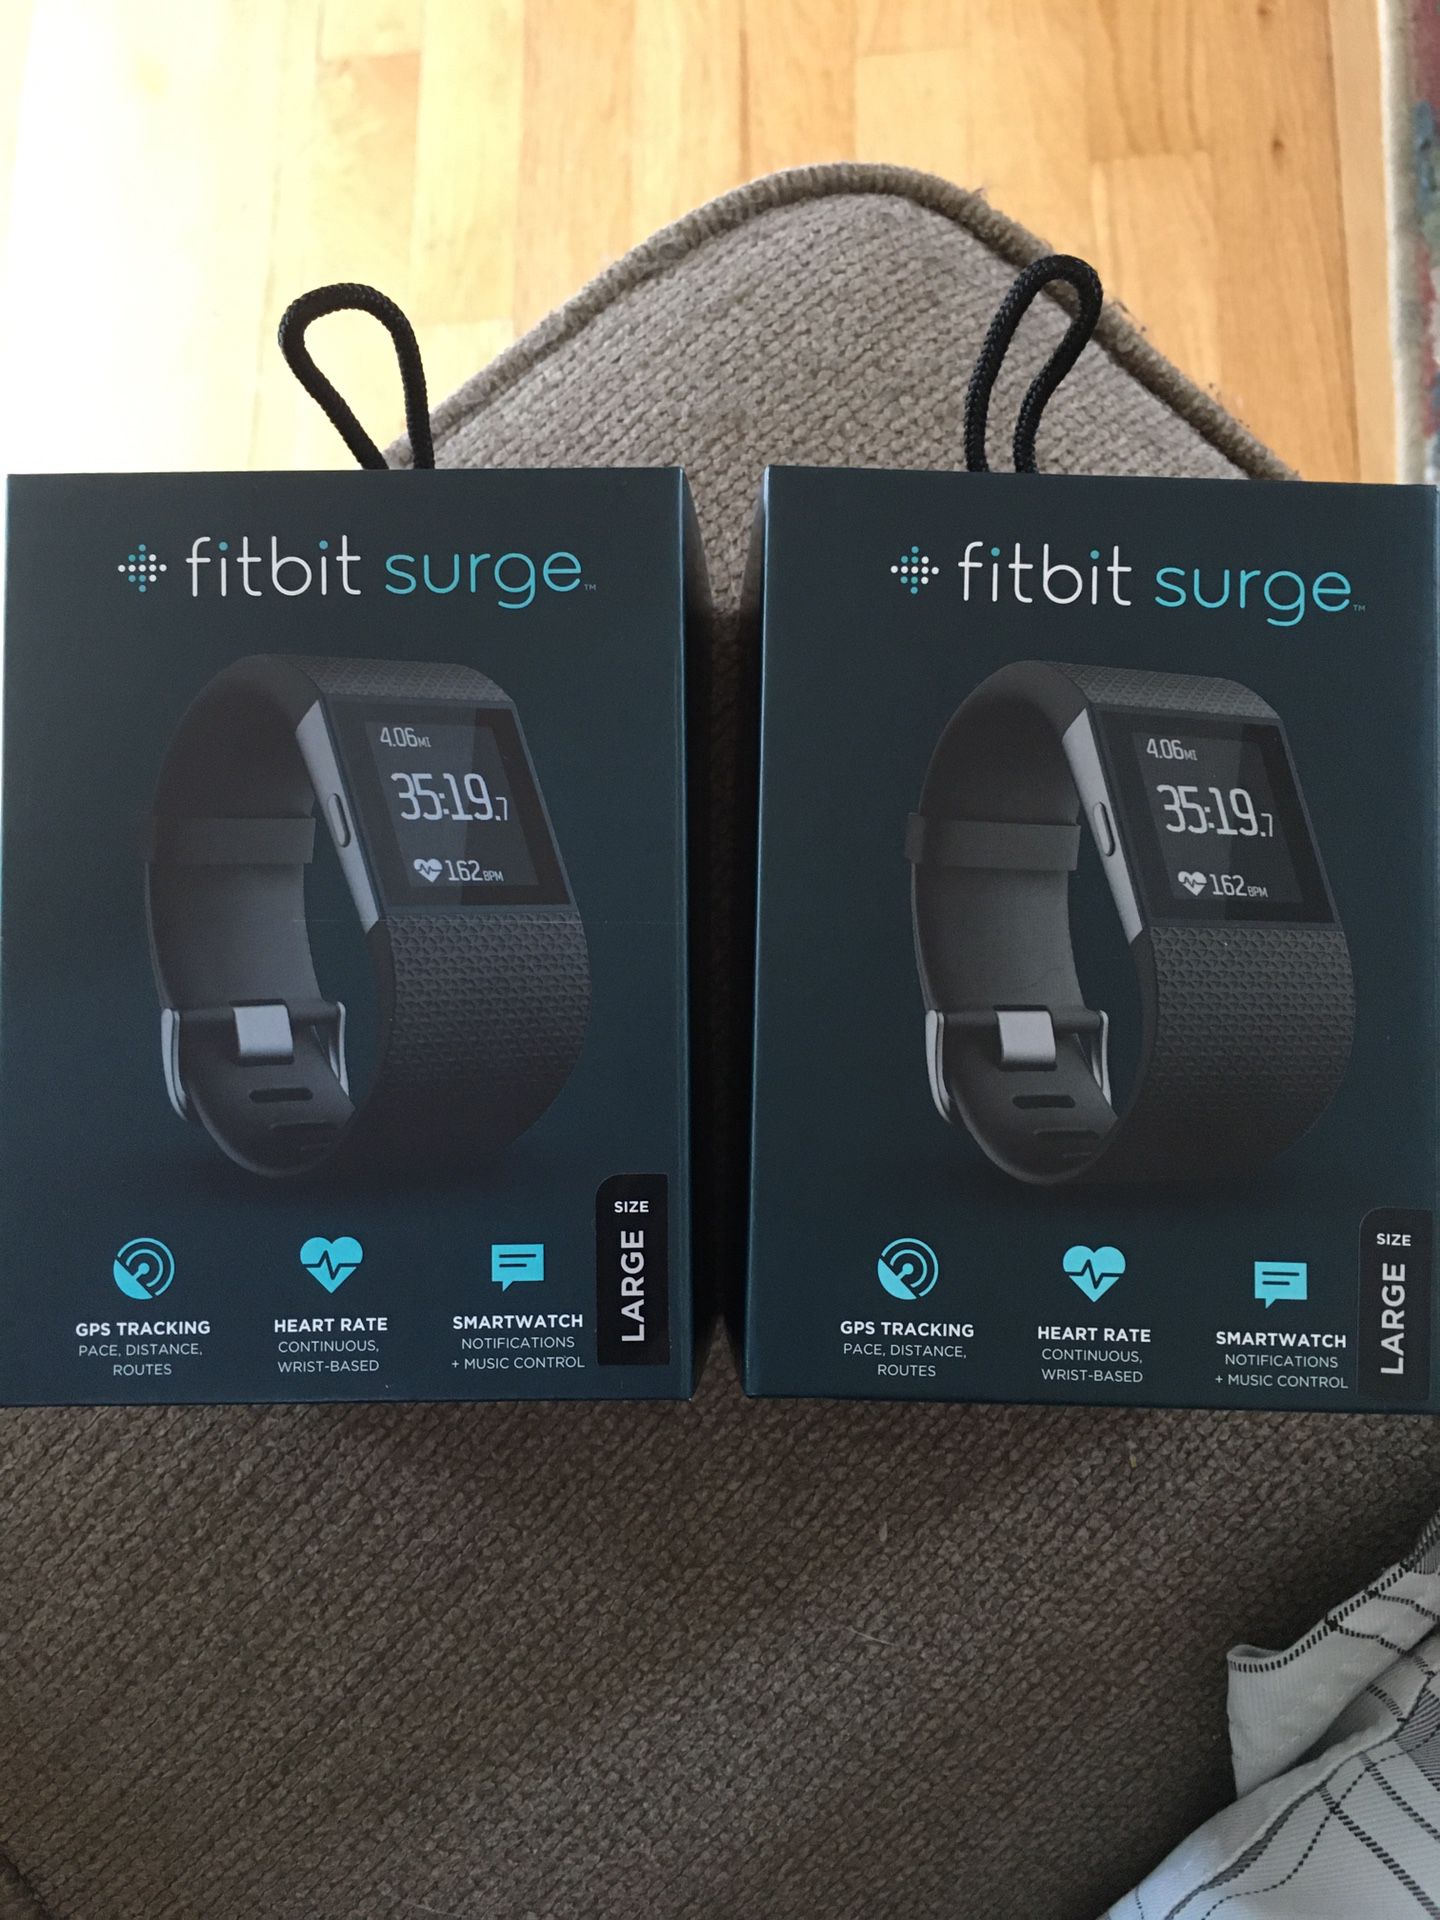 Fitbit Surge’s